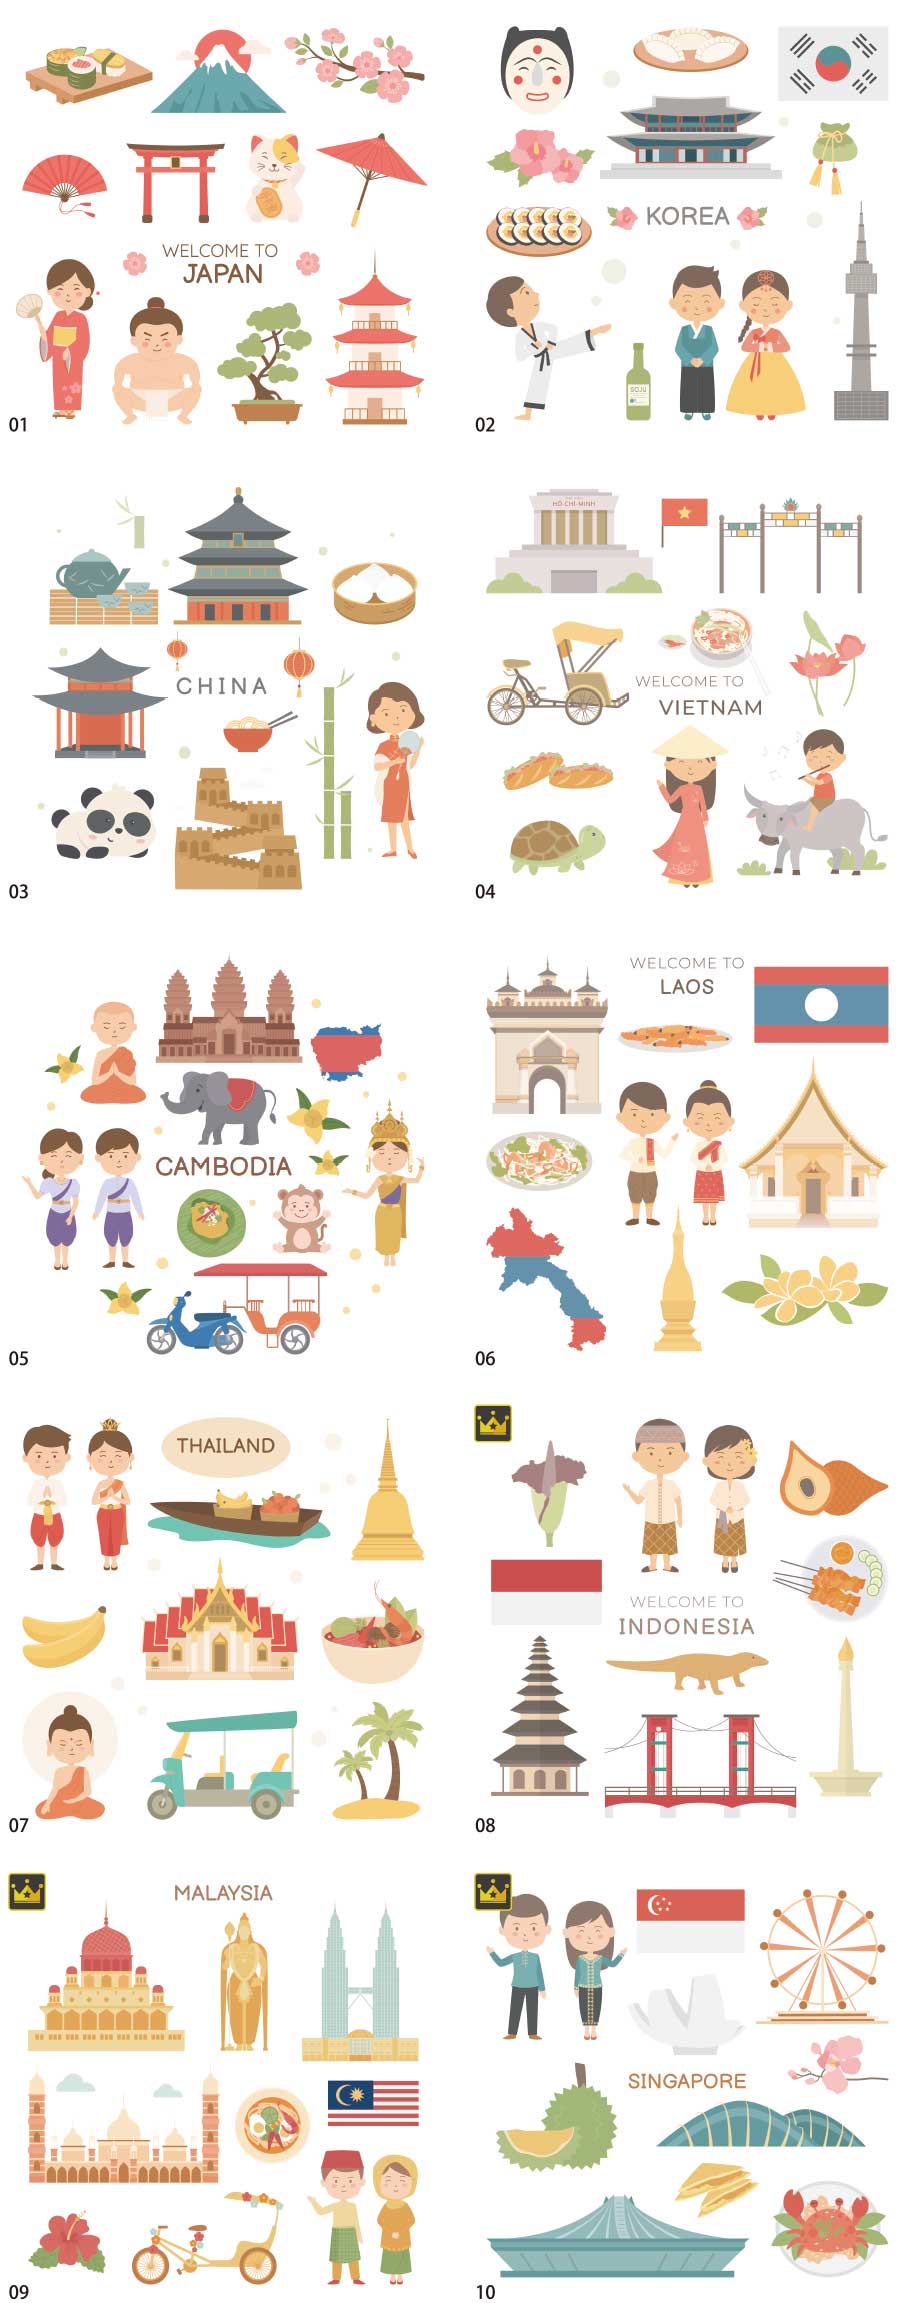 Bộ sưu tập minh họa các quốc gia trên thế giới phiên bản Châu Á